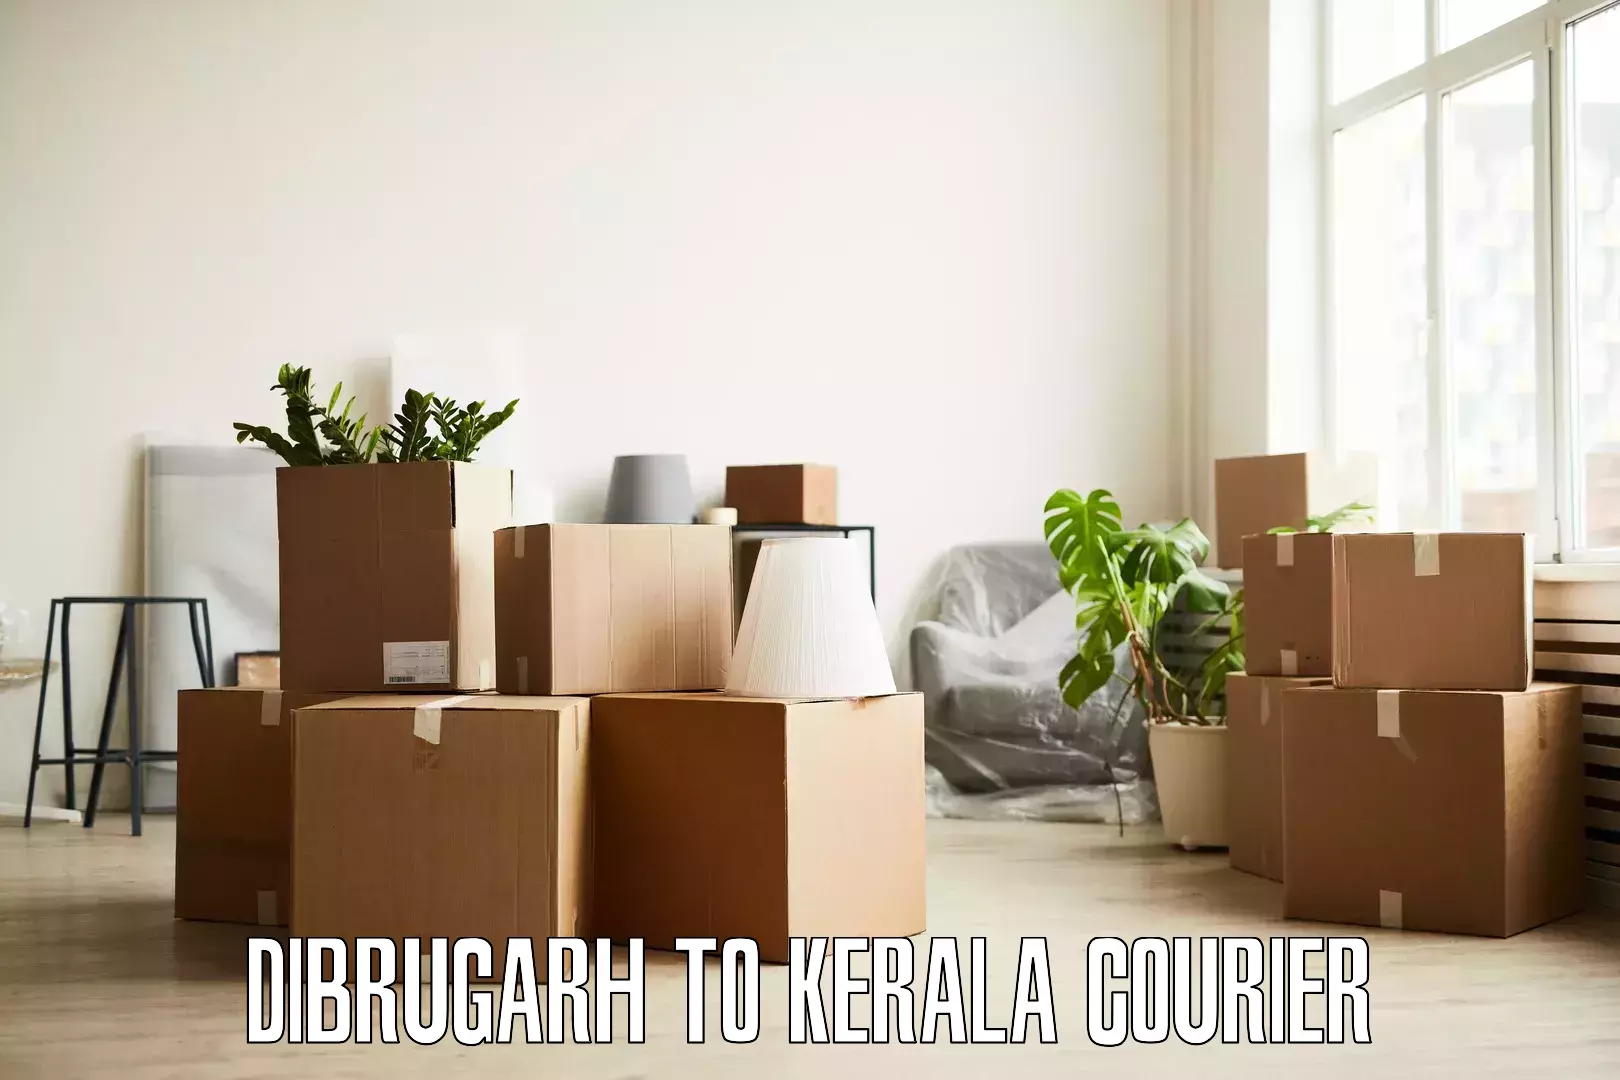 Stress-free furniture moving Dibrugarh to Nileshwar